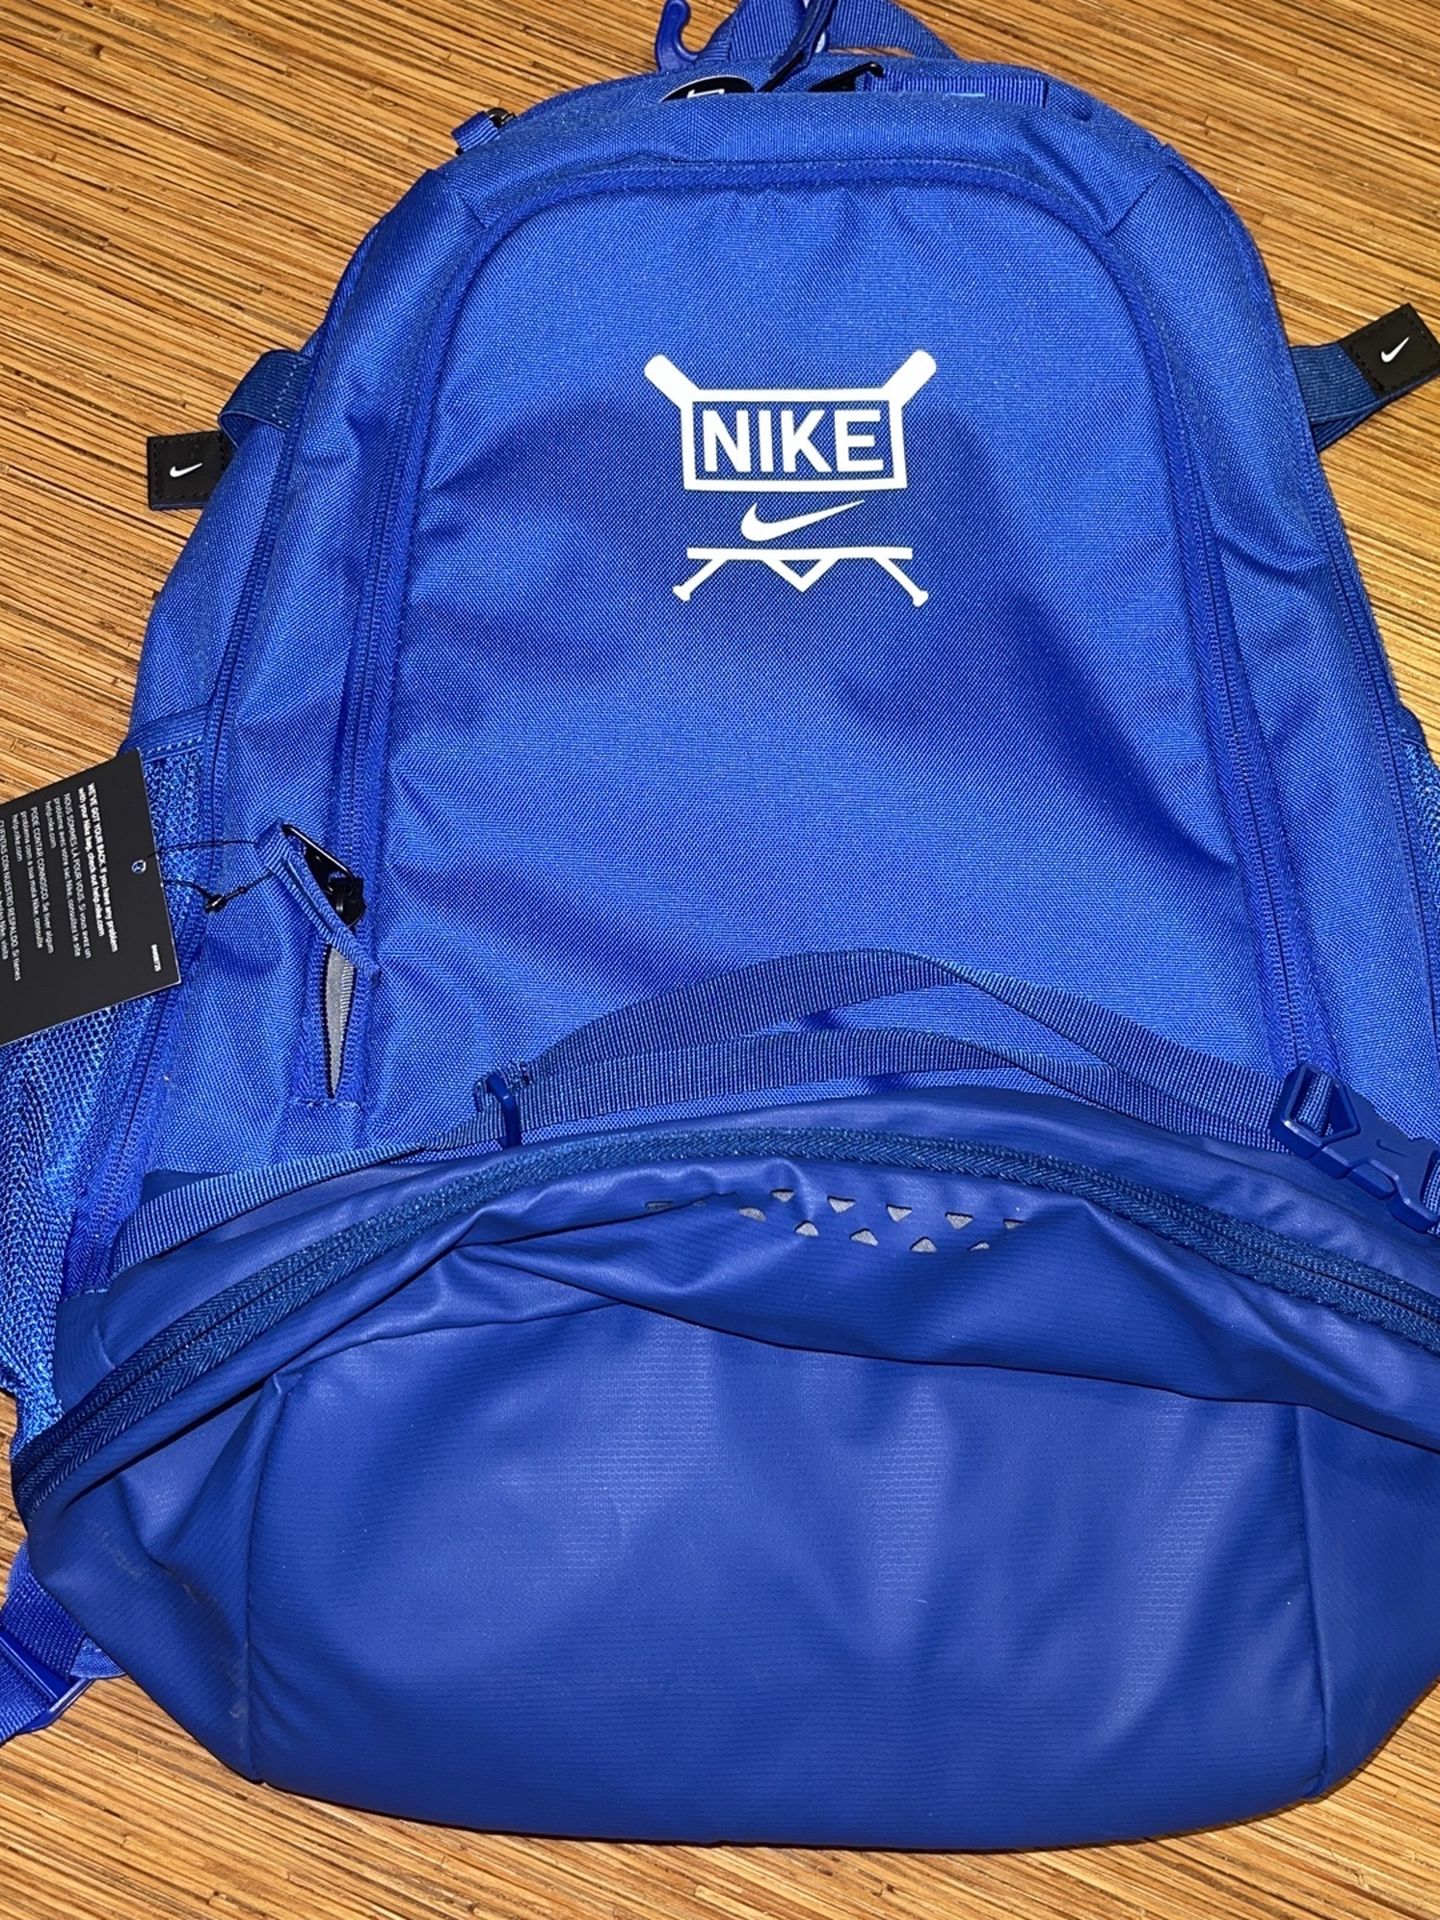 Men’s Nike Vapor Select Baseball Backpack Brand New